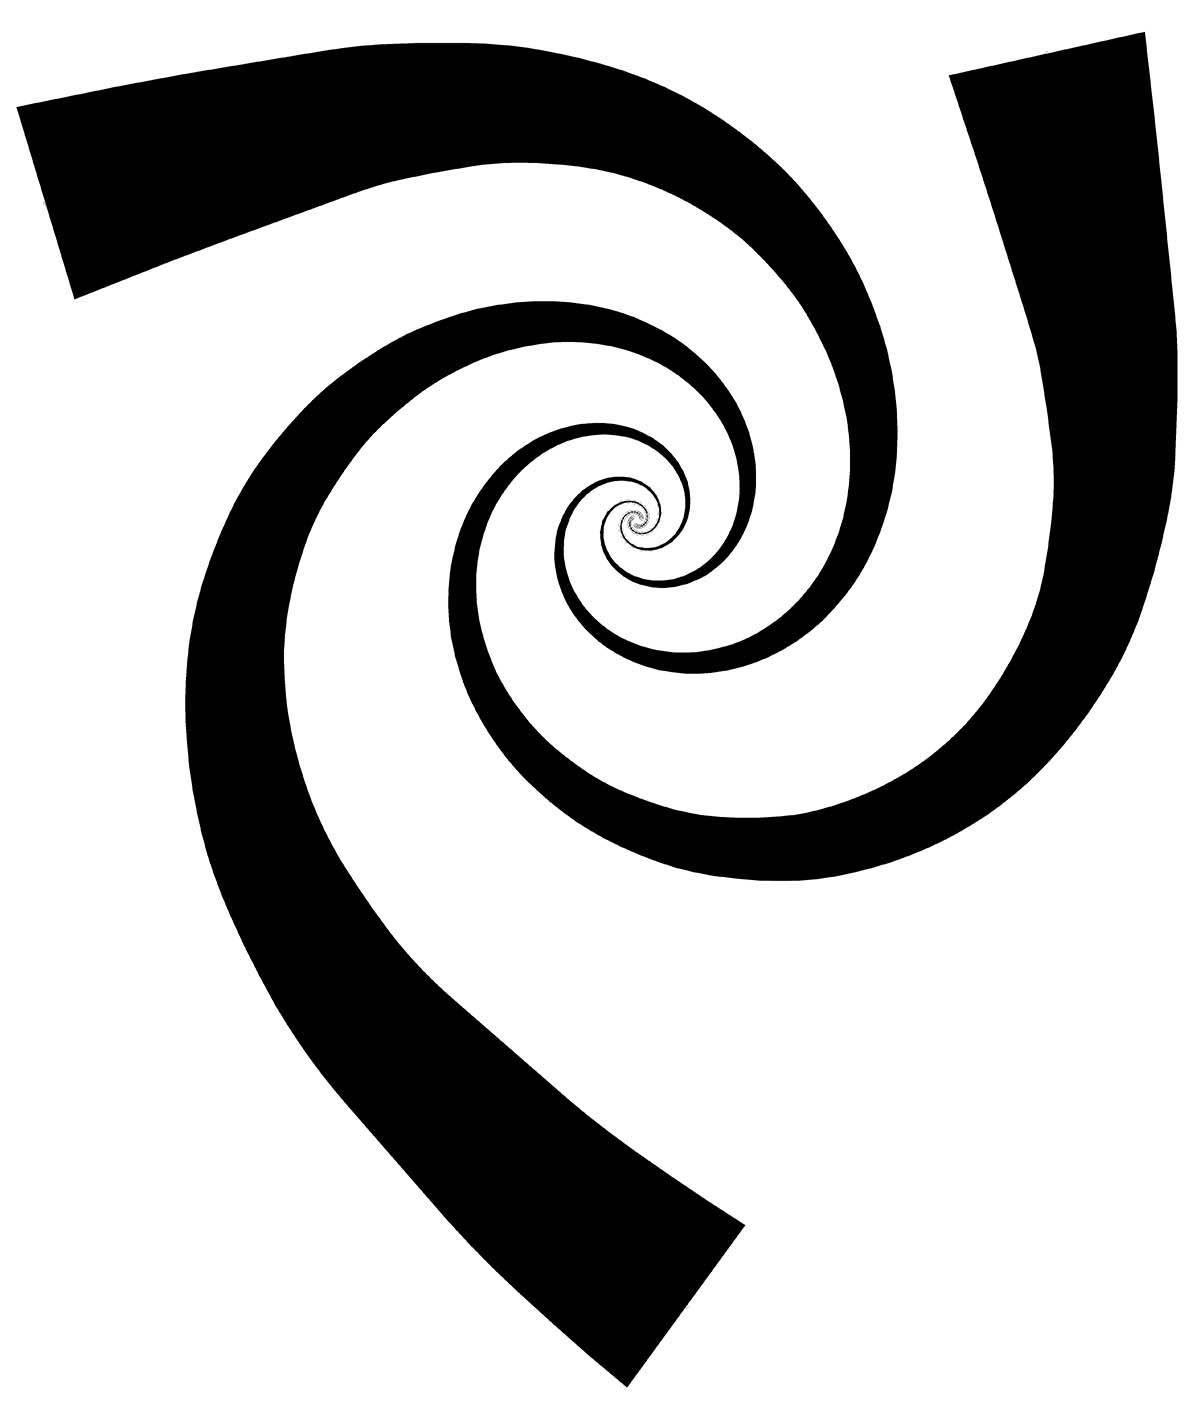 3-Spiral.jpg